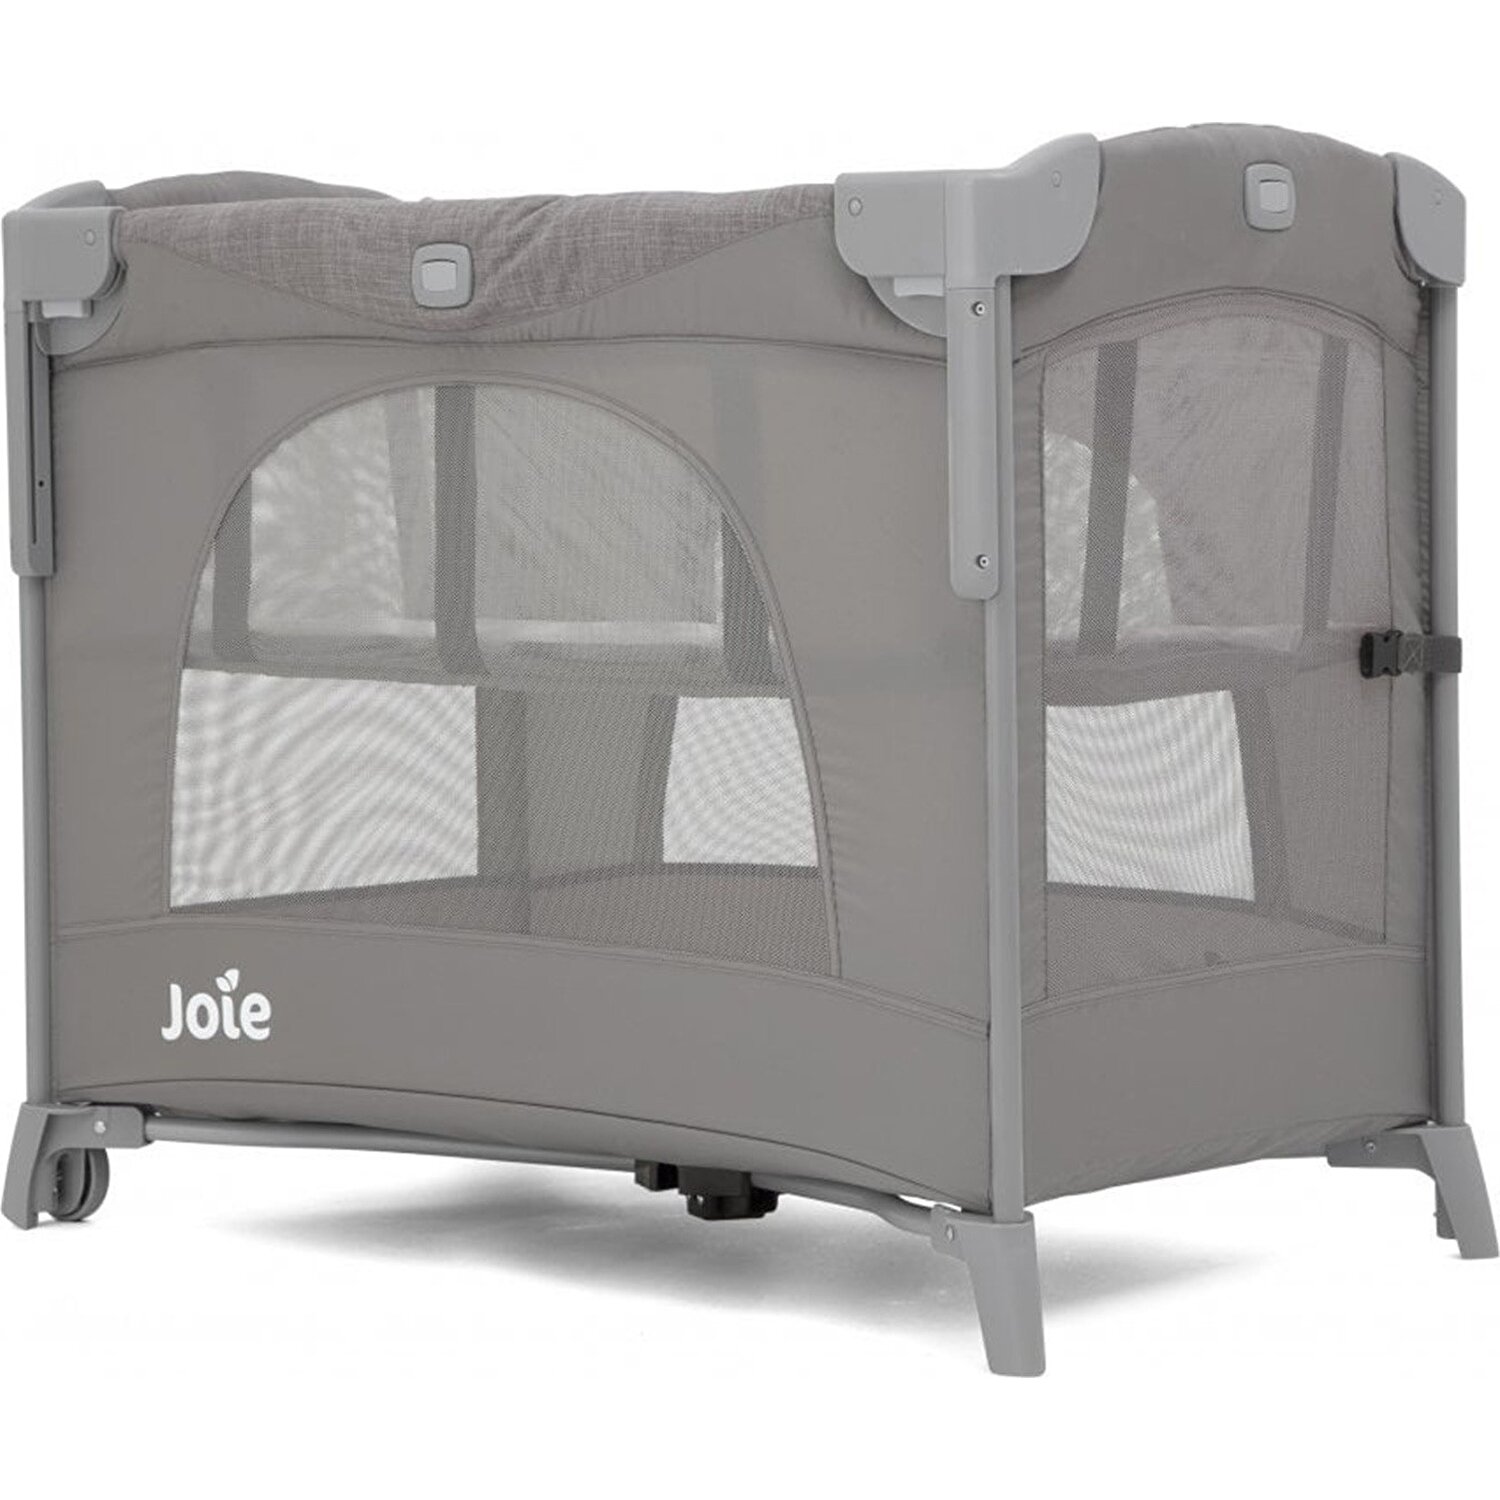 Joie Kubbie Sleep Park Yatak Fiyatı Taksit Seçenekleri